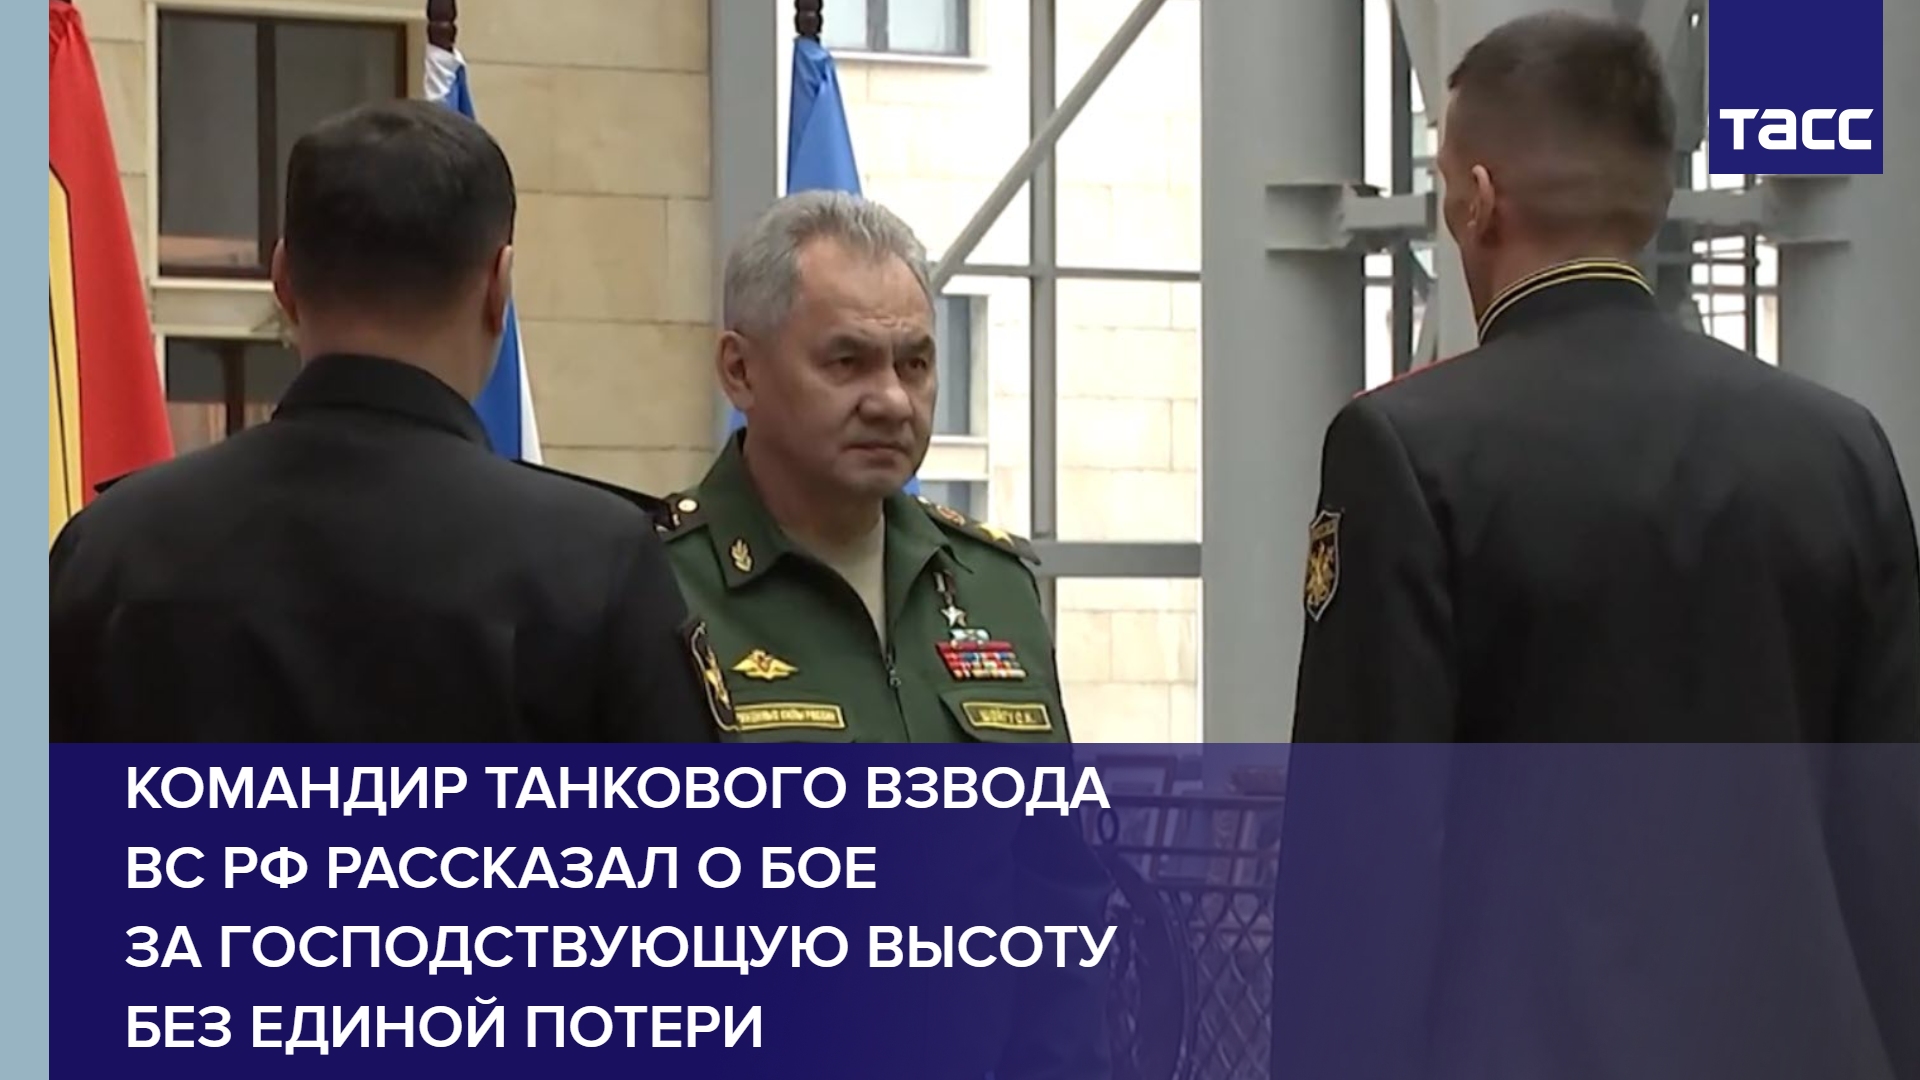 Командир танкового взвода ВС РФ рассказал о бое за господствующую высоту без единой потери #shorts